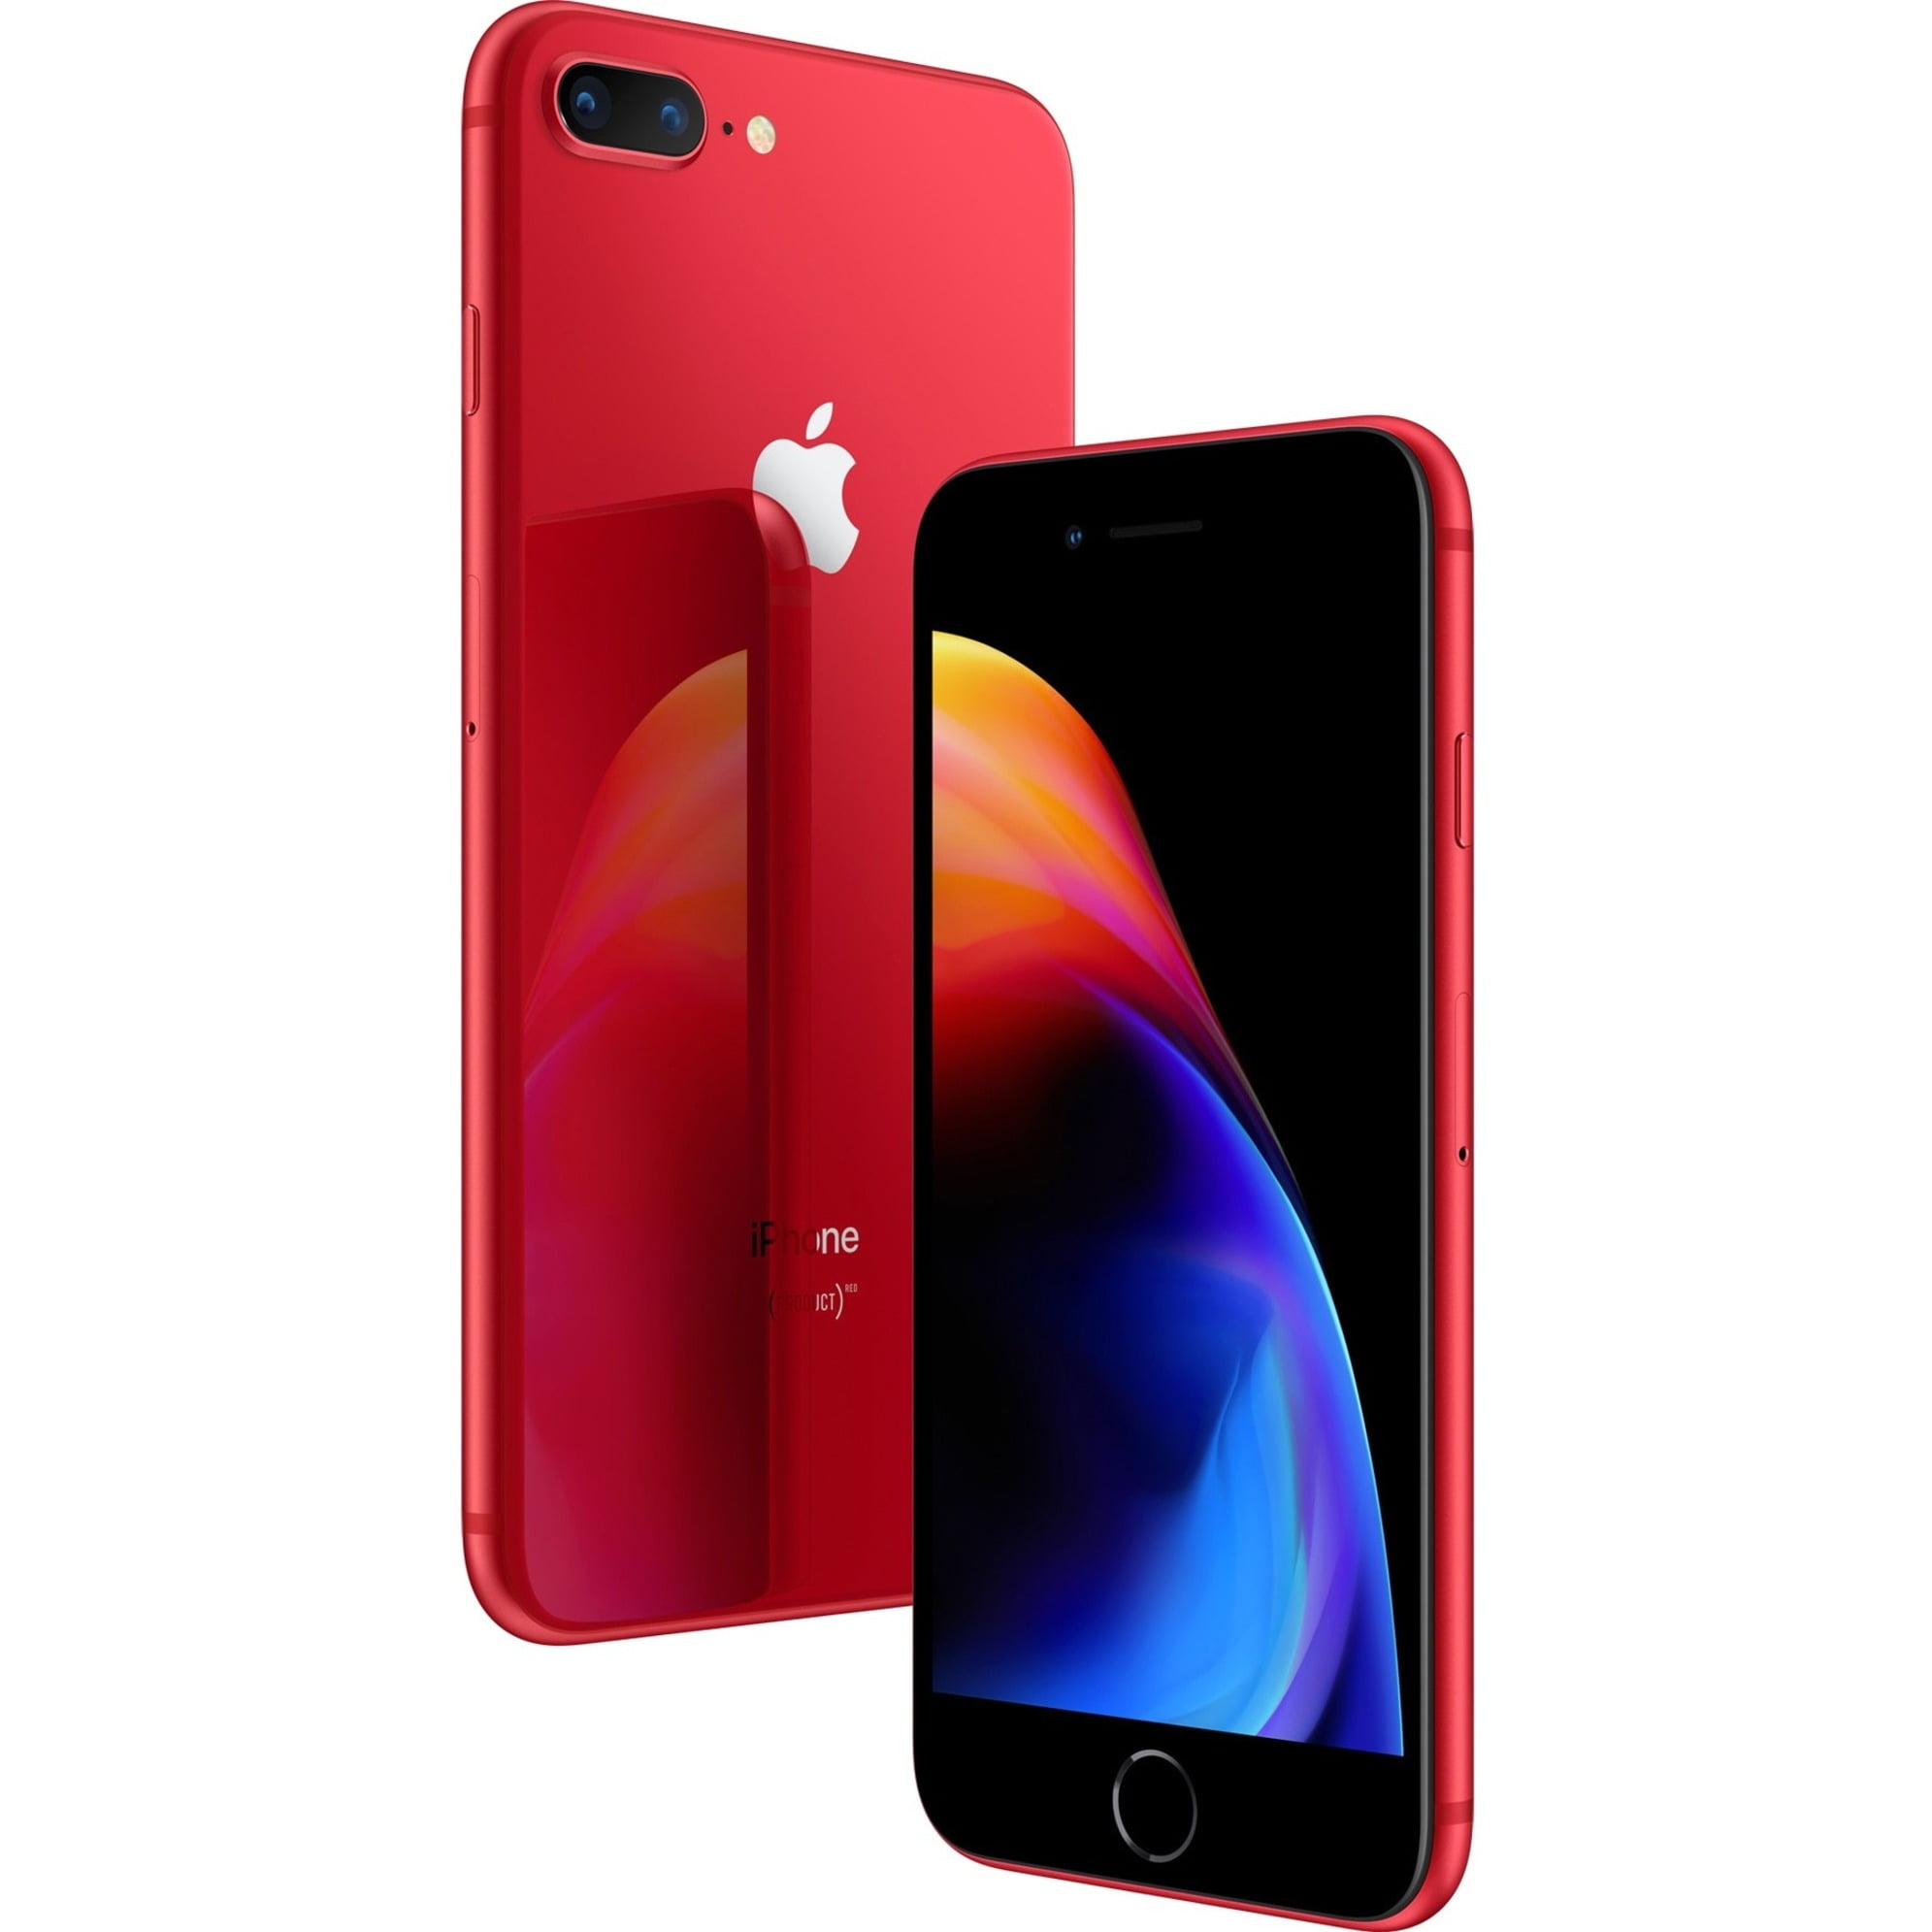 スマホ・ iPhone 8 Plus RED 256GB SIMフリー vPtmp-m90103621359 イヤホン